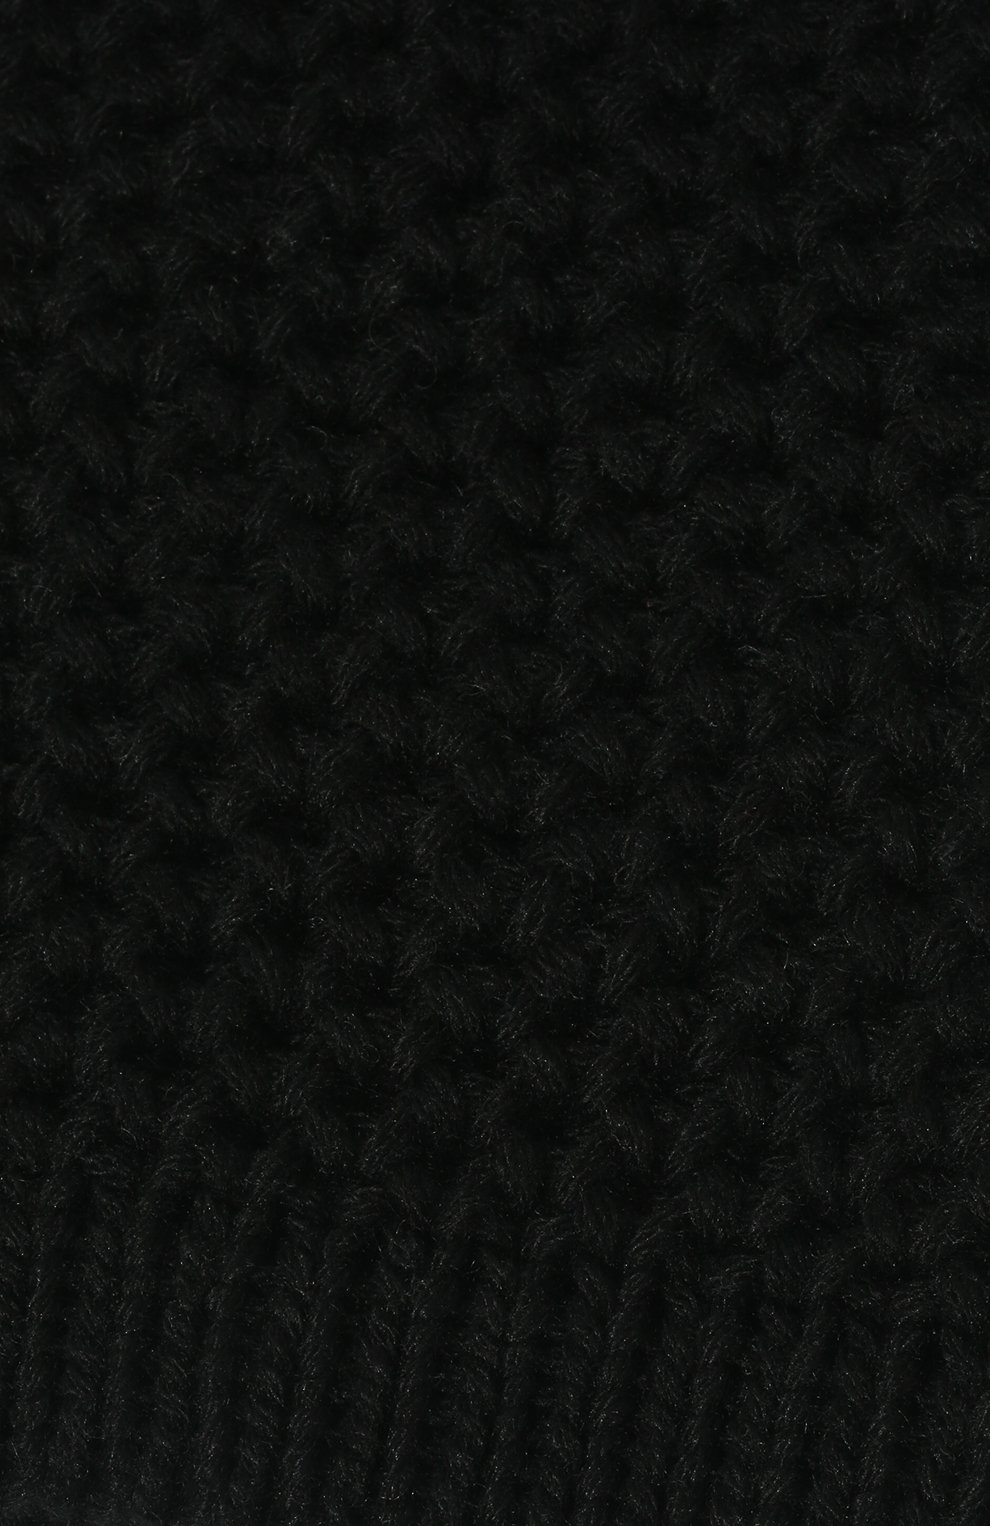 Женская кашемировая шапка INVERNI черного цвета, арт. 0097 CMG8 | Фото 4 (Материал: Текстиль, Кашемир, Шерсть)